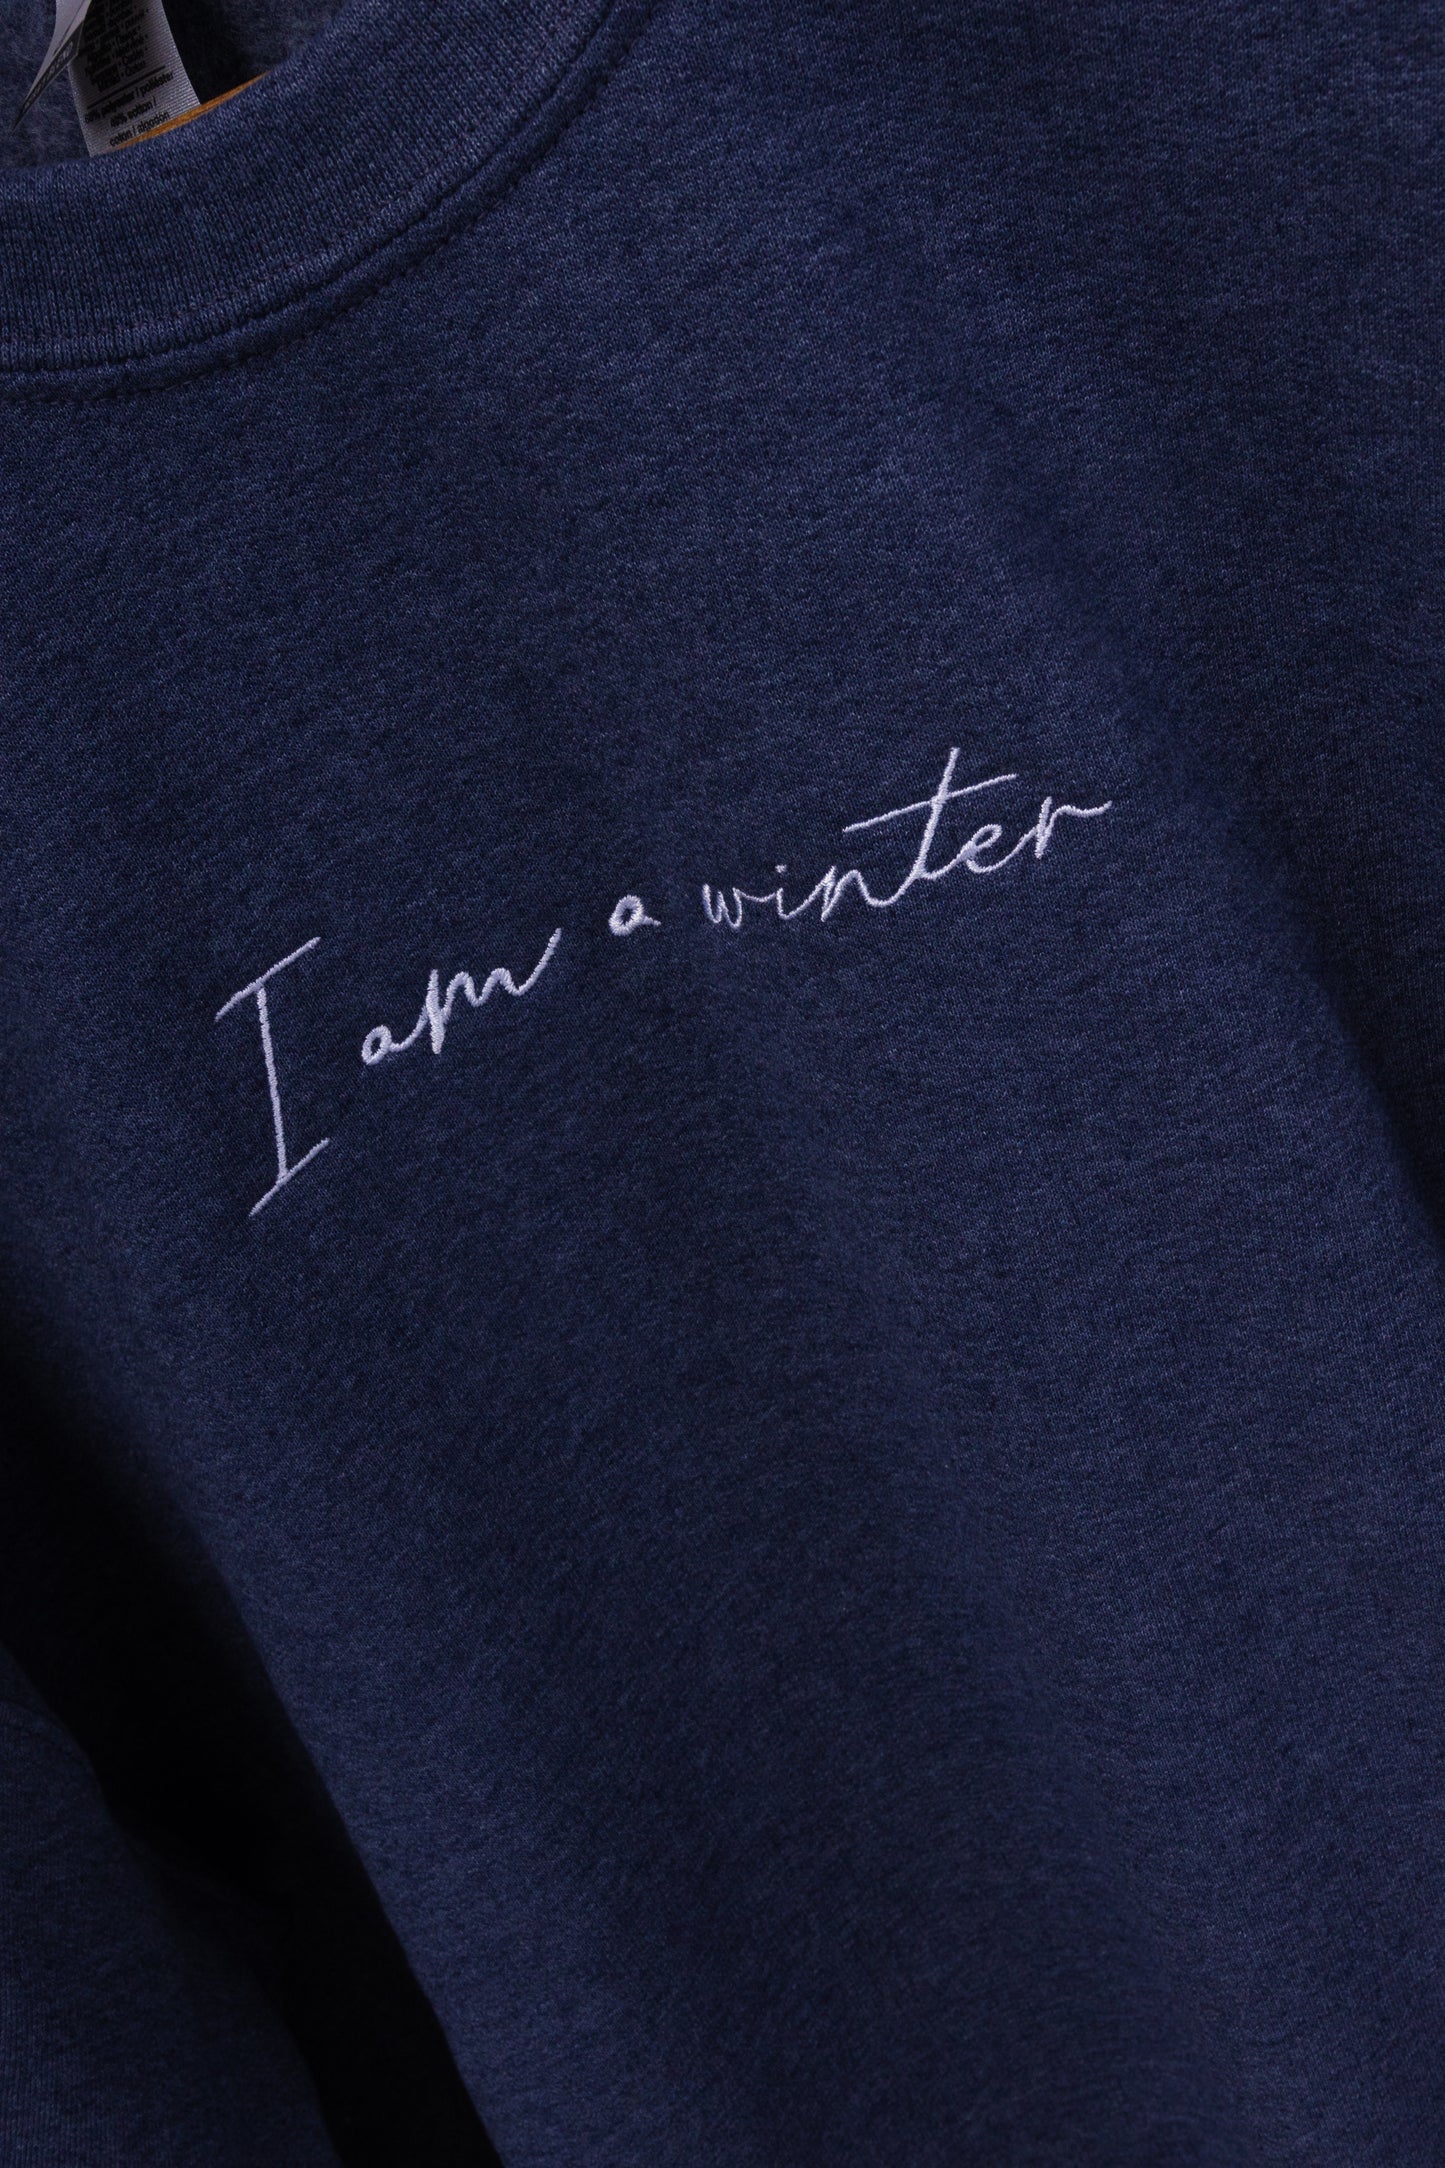 I am a winter Sweatshirt & Tee